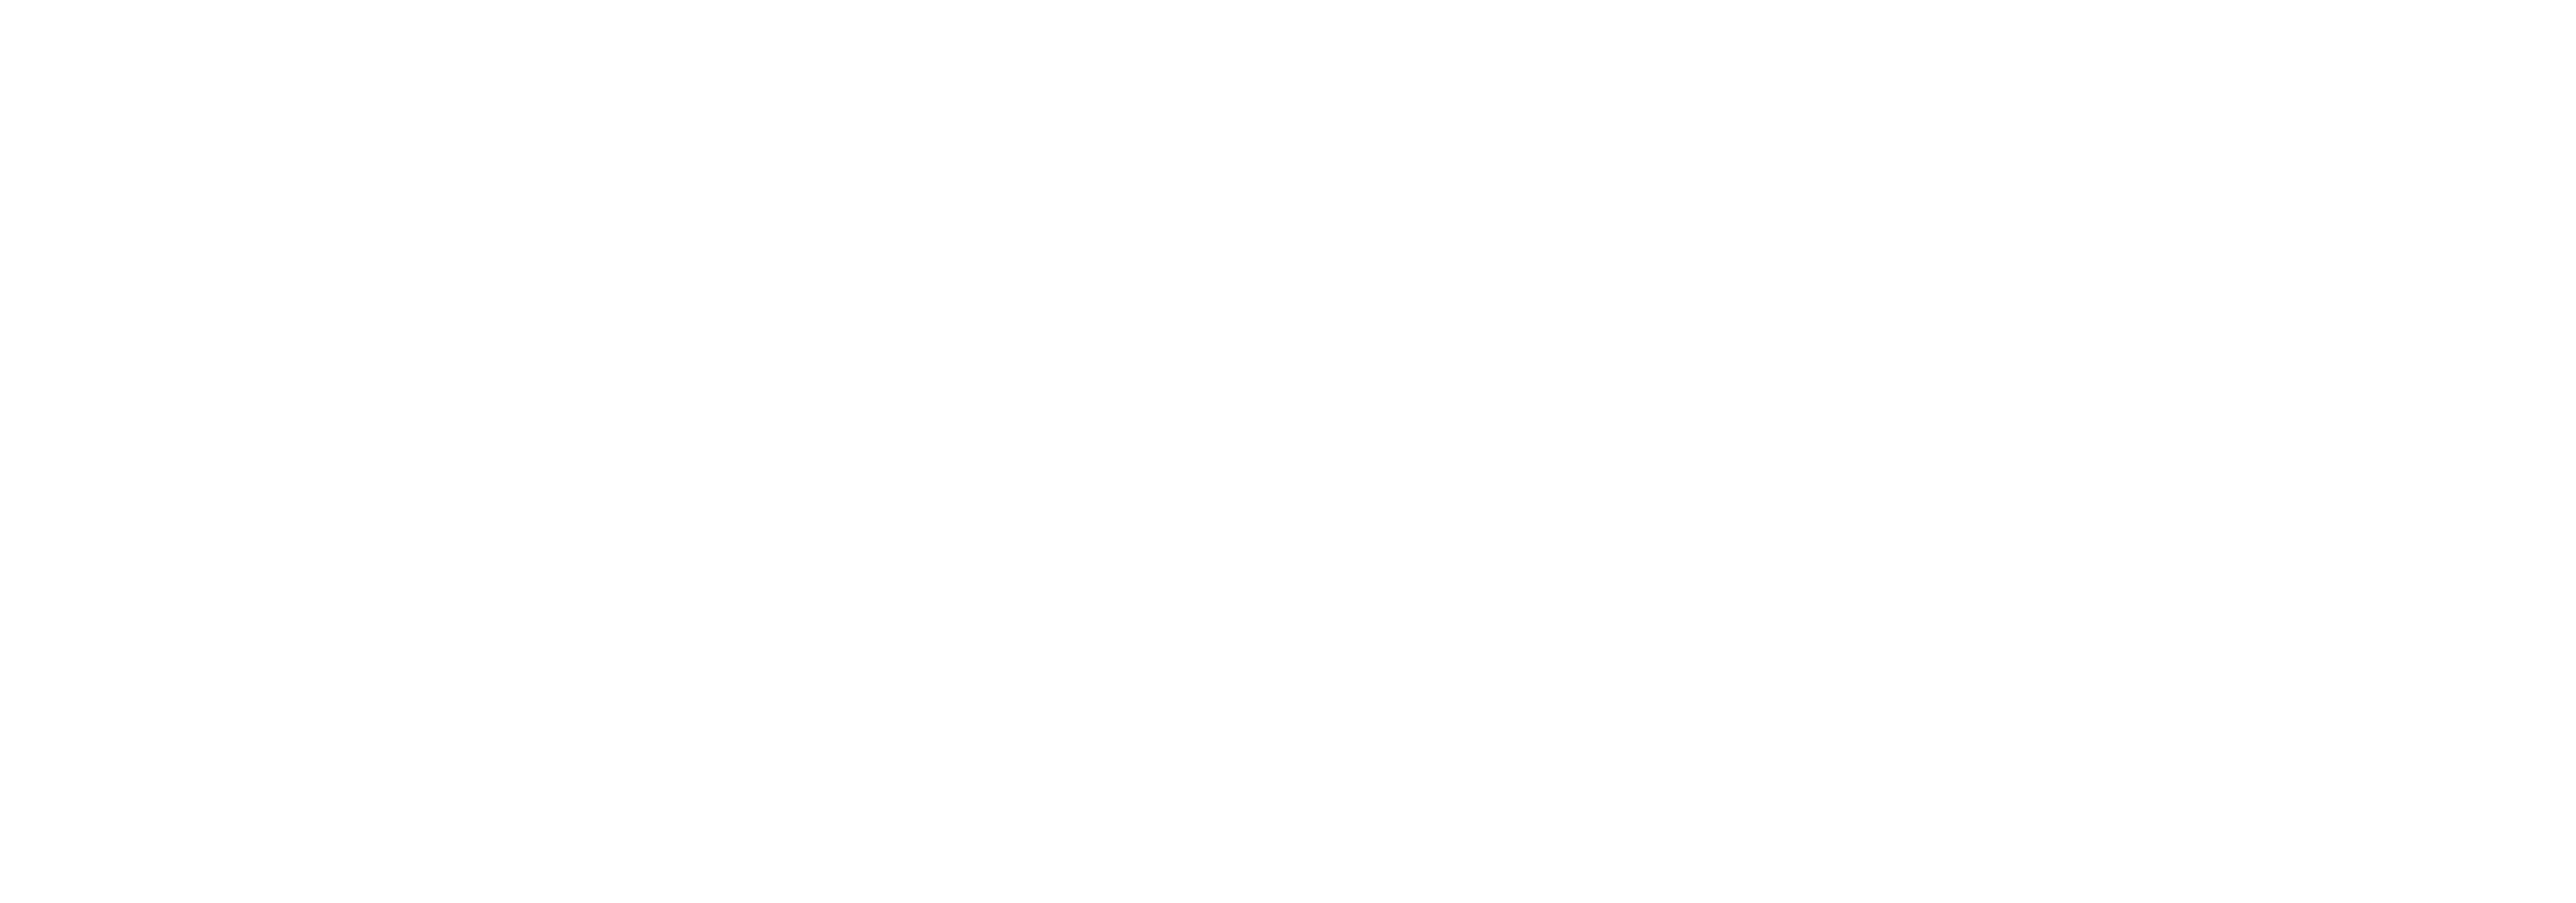 Coca-Cola_logo_white-01